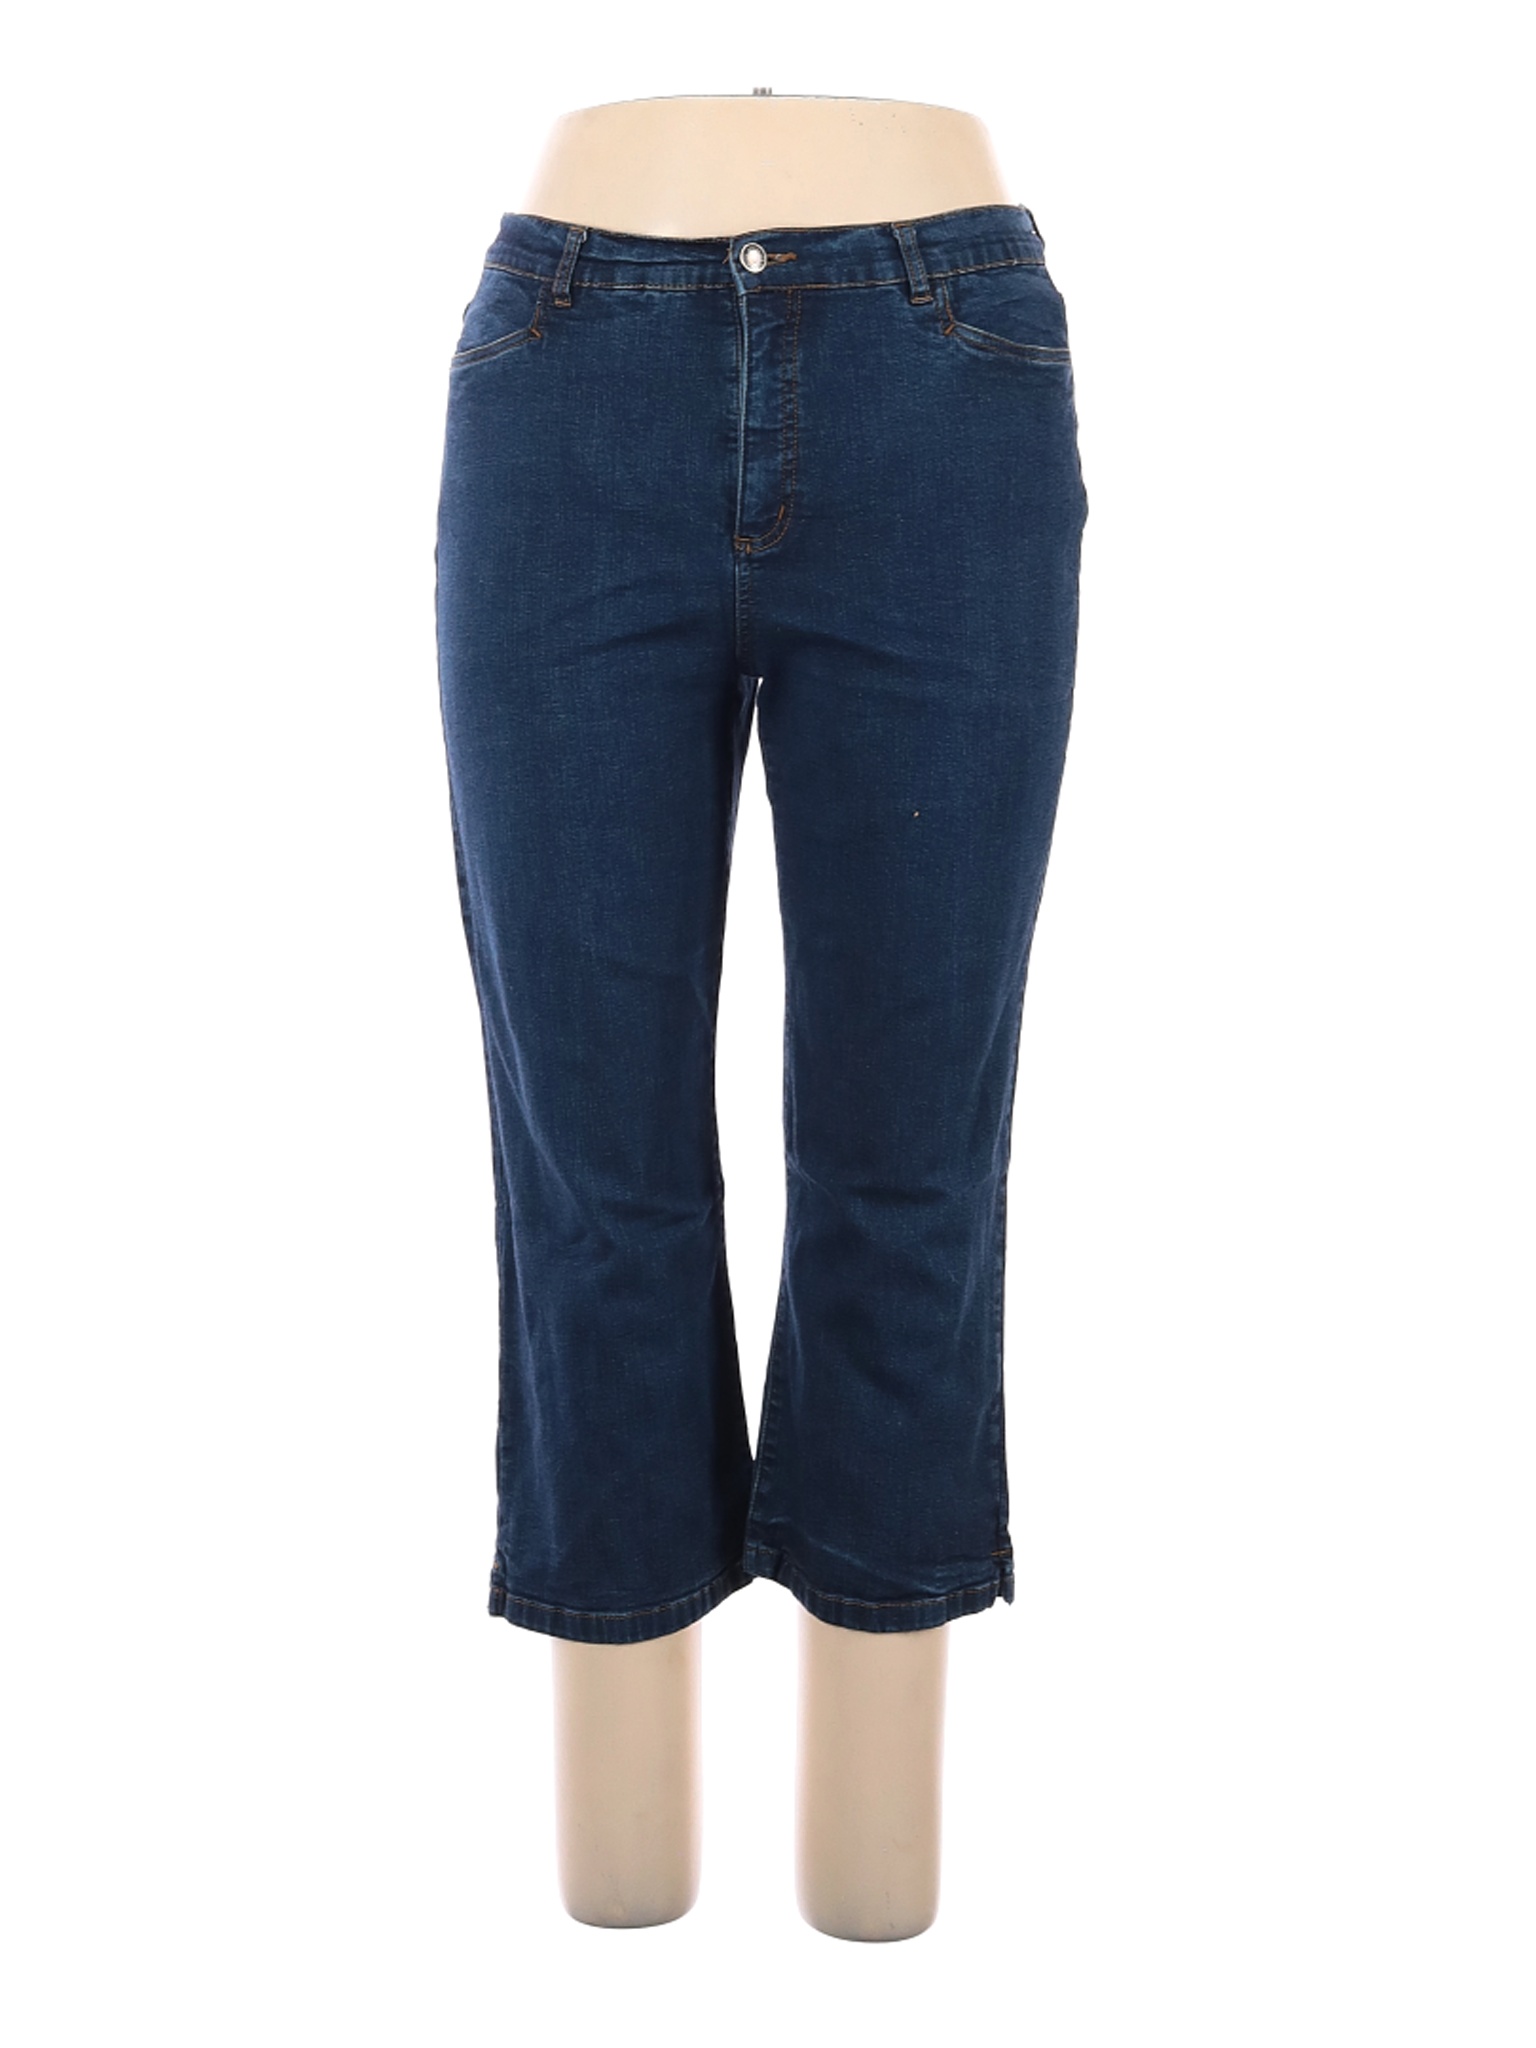 Westbound Women Blue Jeans 14 | eBay